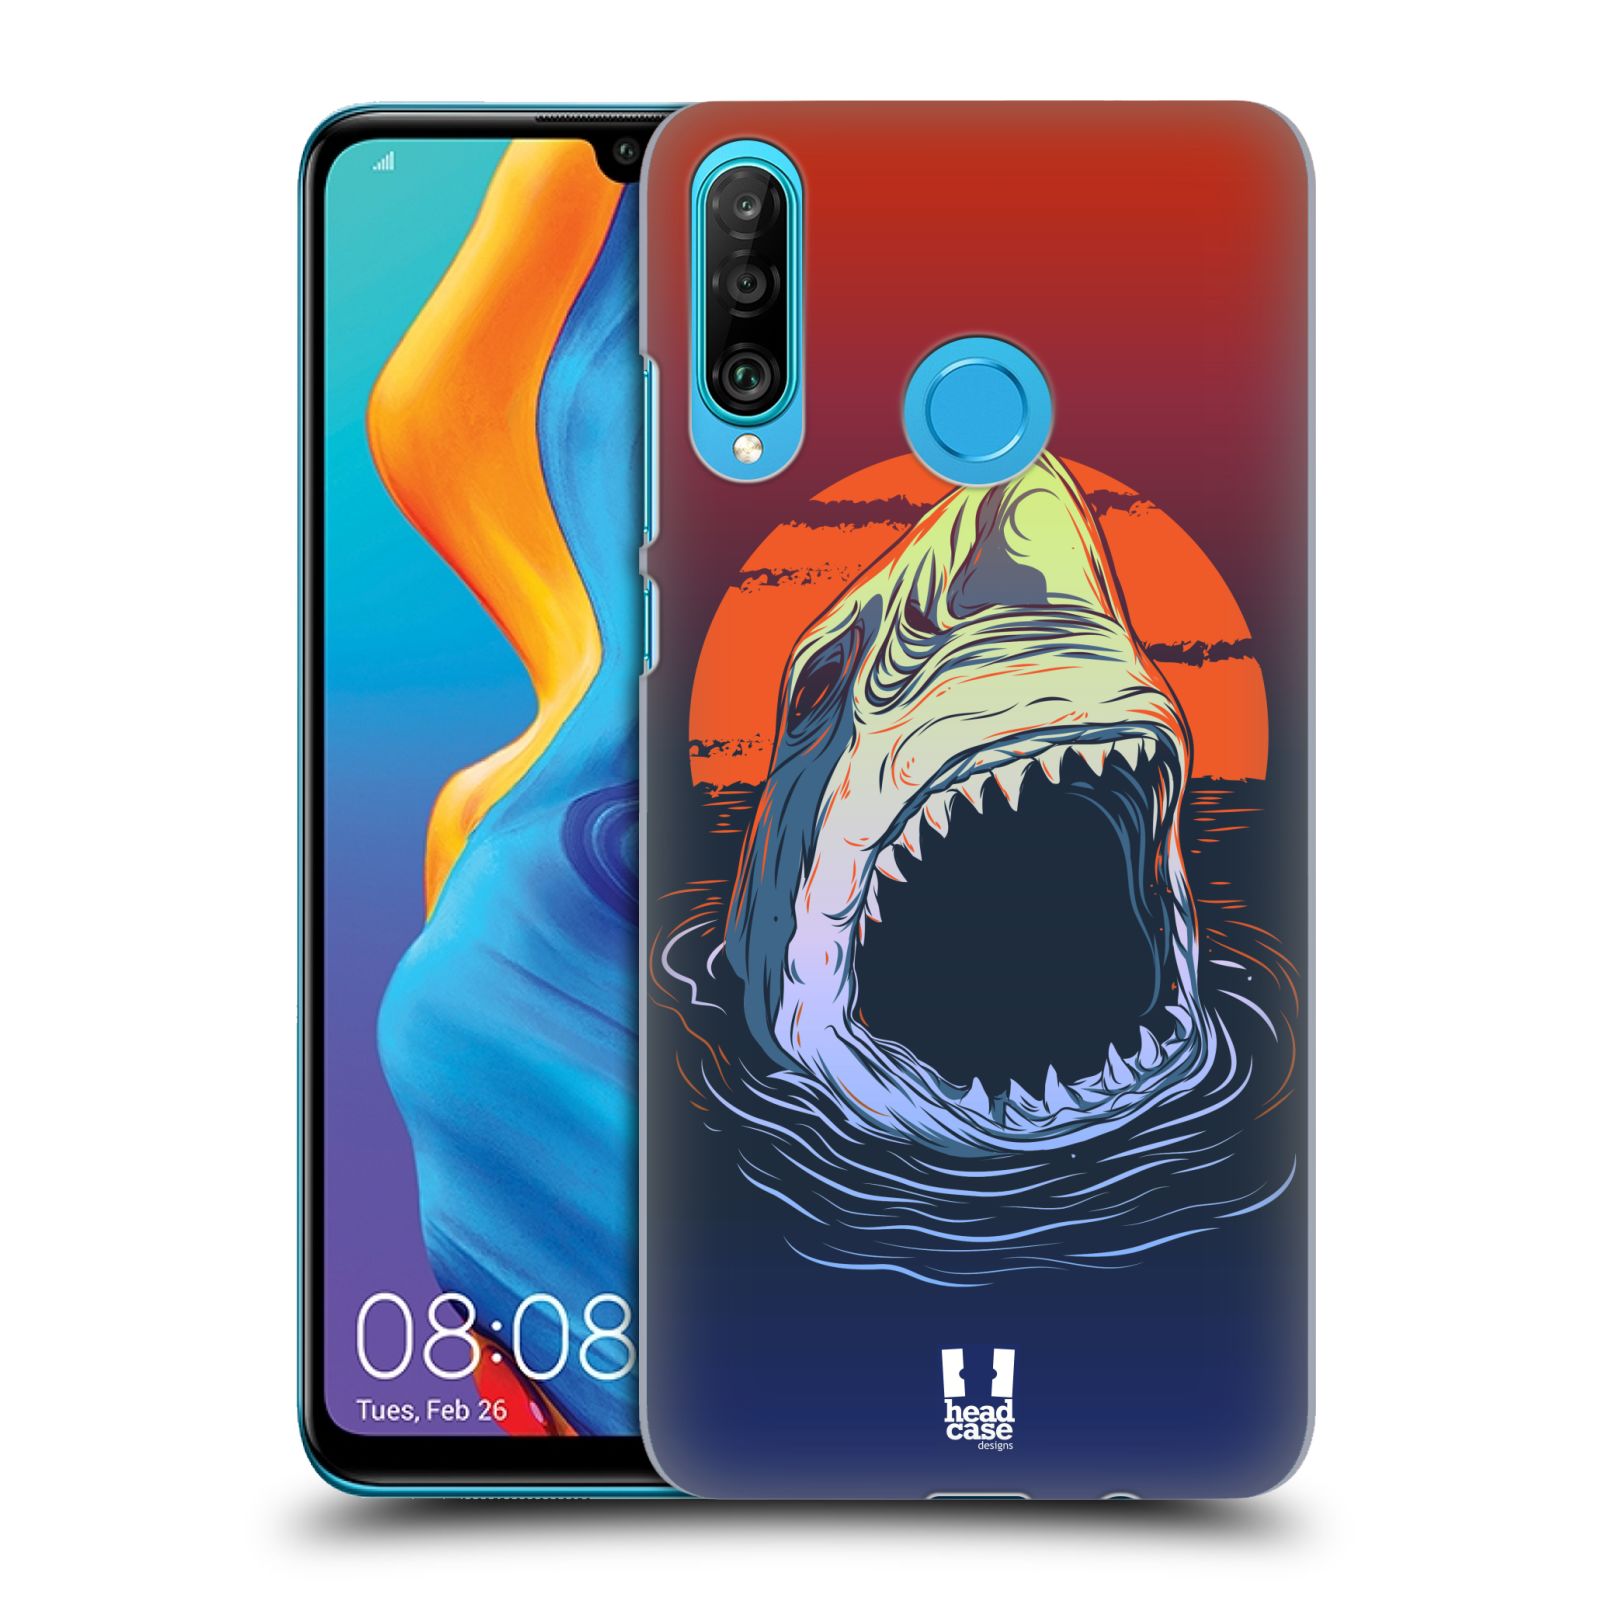 Pouzdro na mobil Huawei P30 LITE - HEAD CASE - vzor mořská monstra žralok